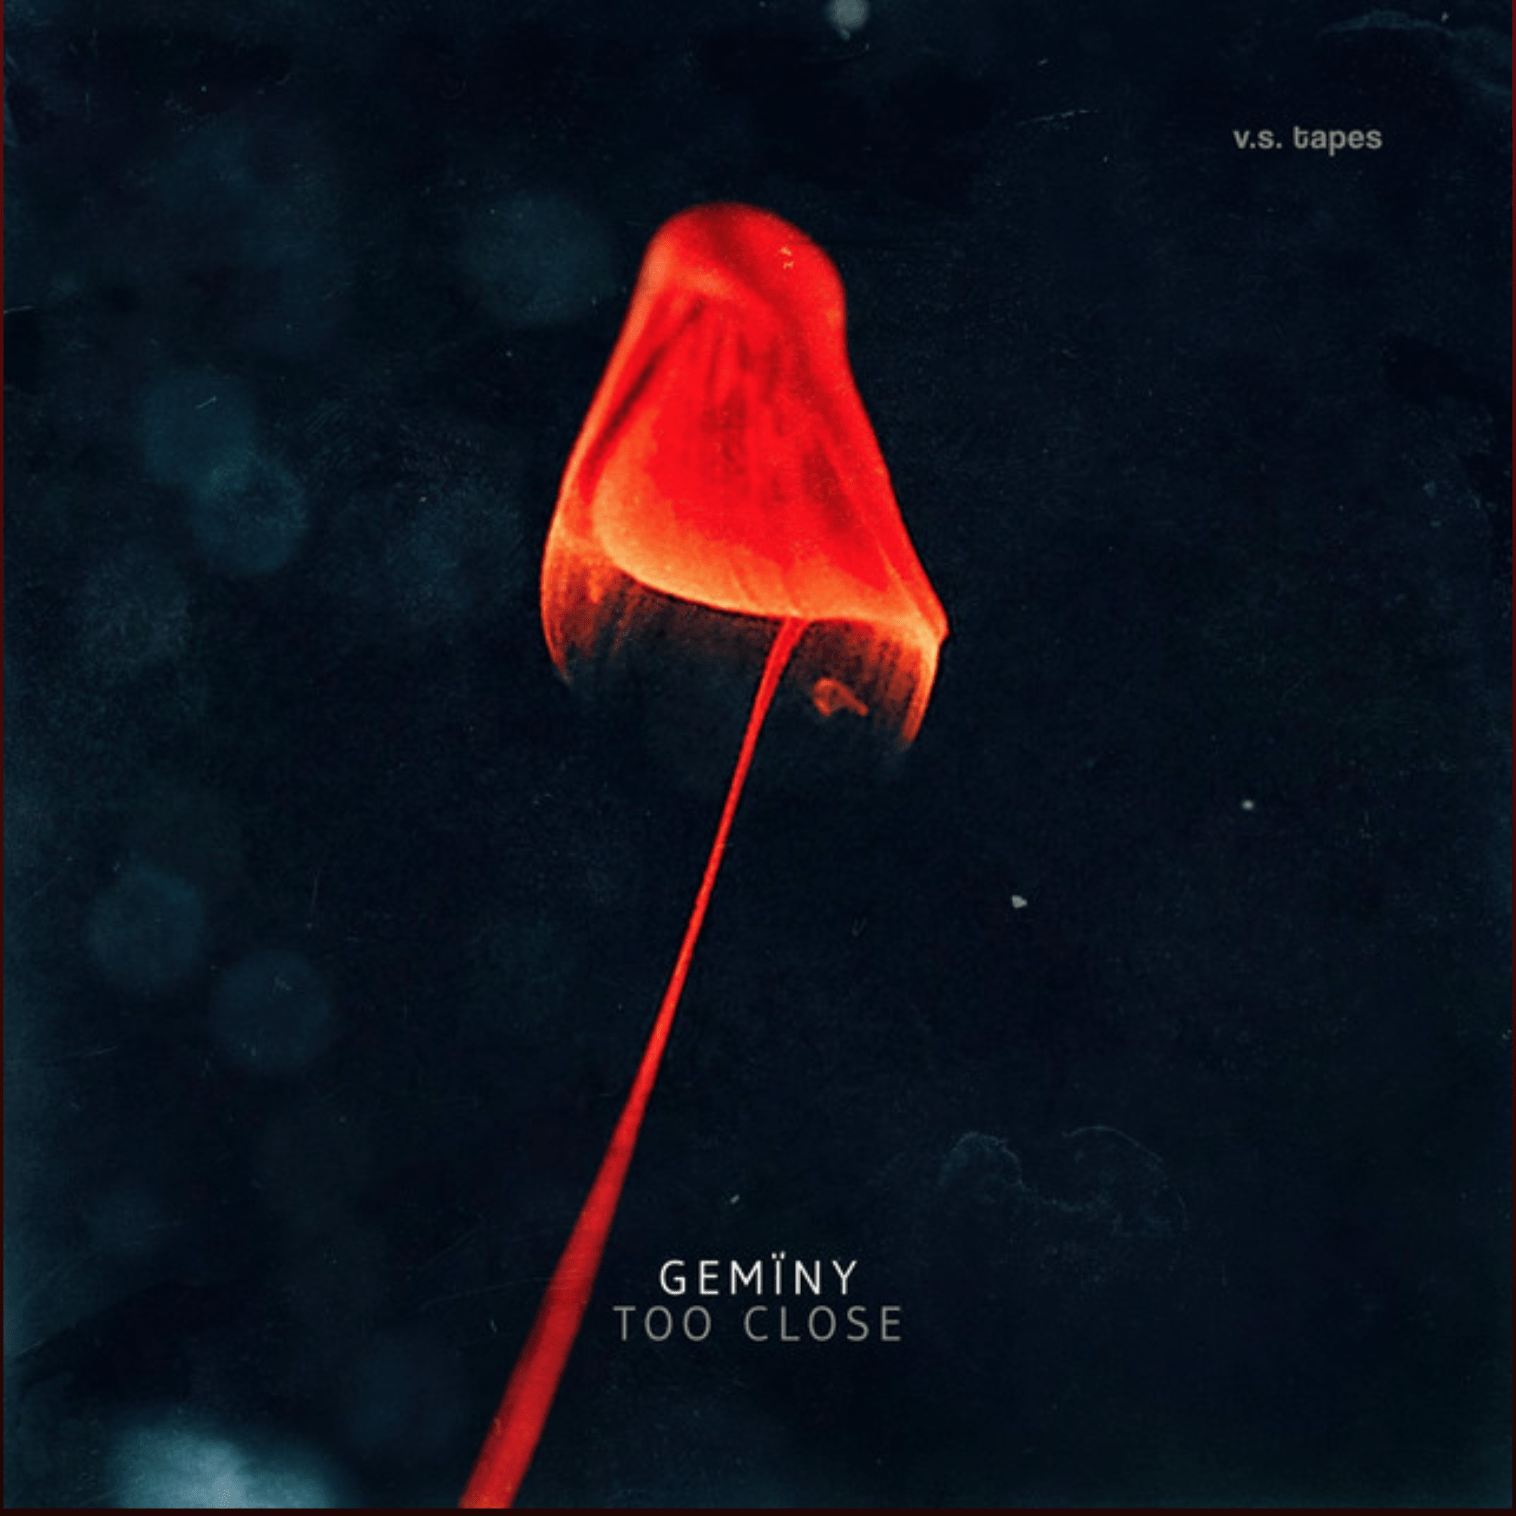 Too Close (Original Single) by Gemïny